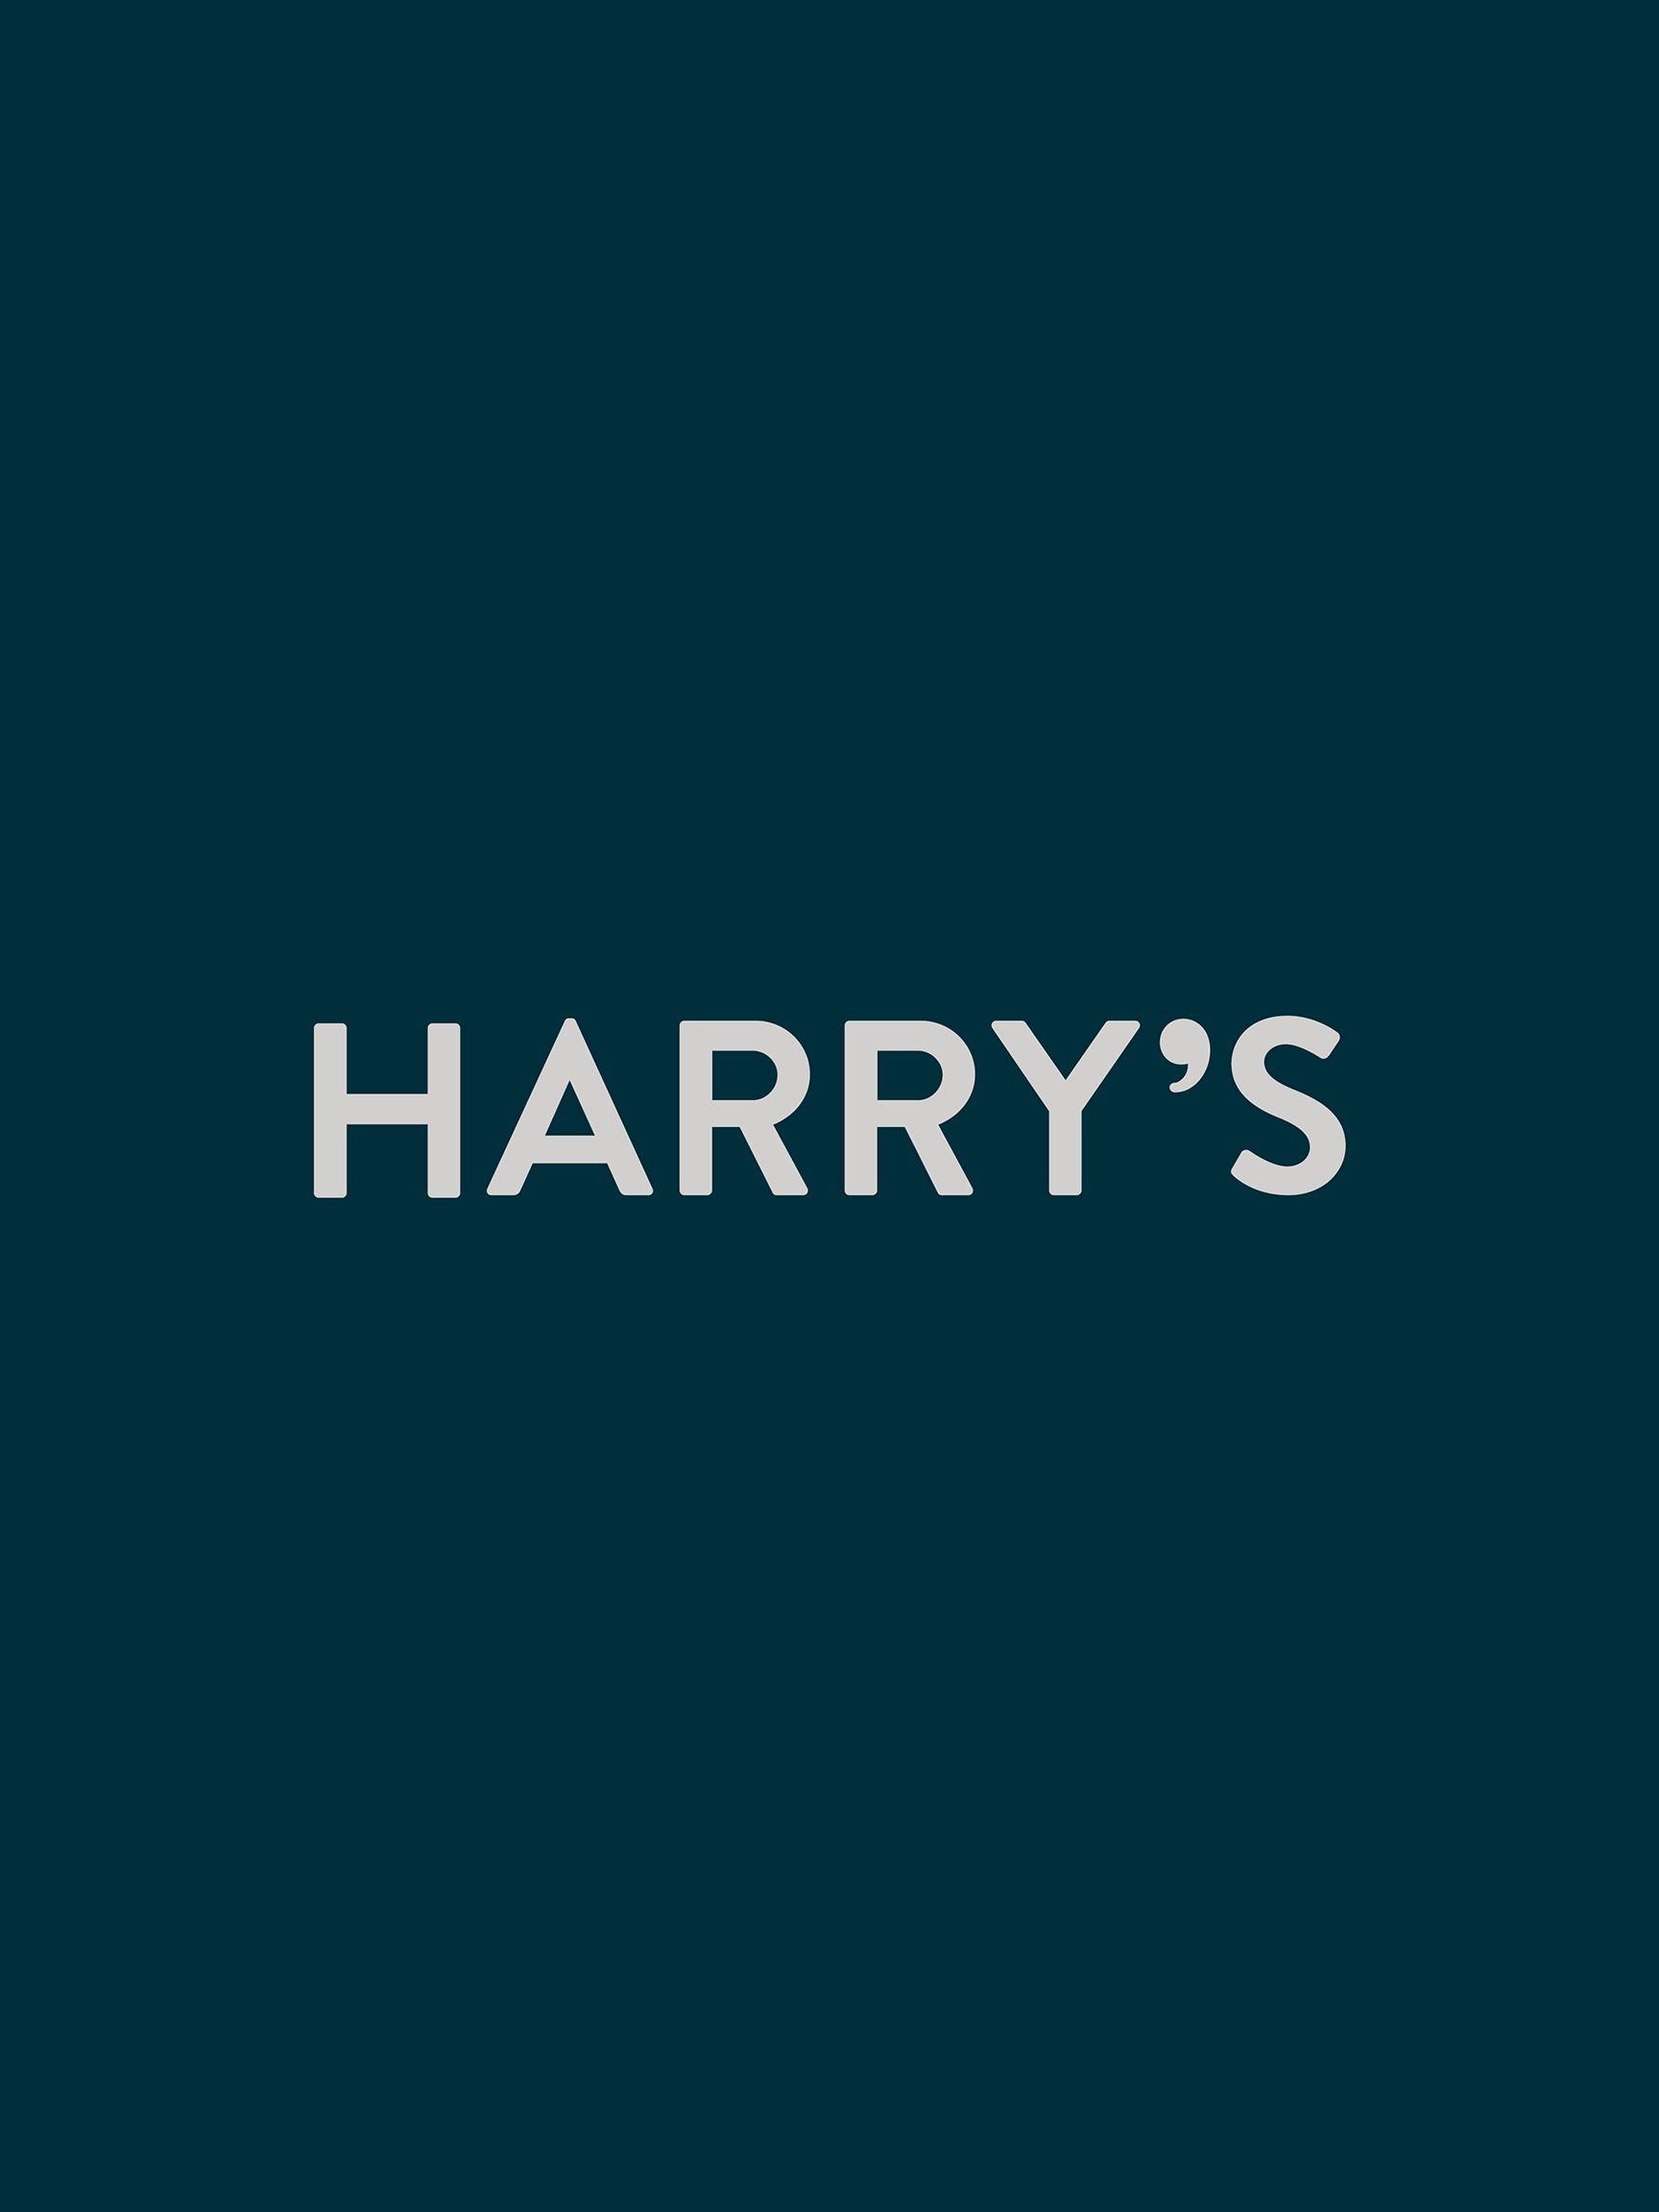 Harrys logo 2x